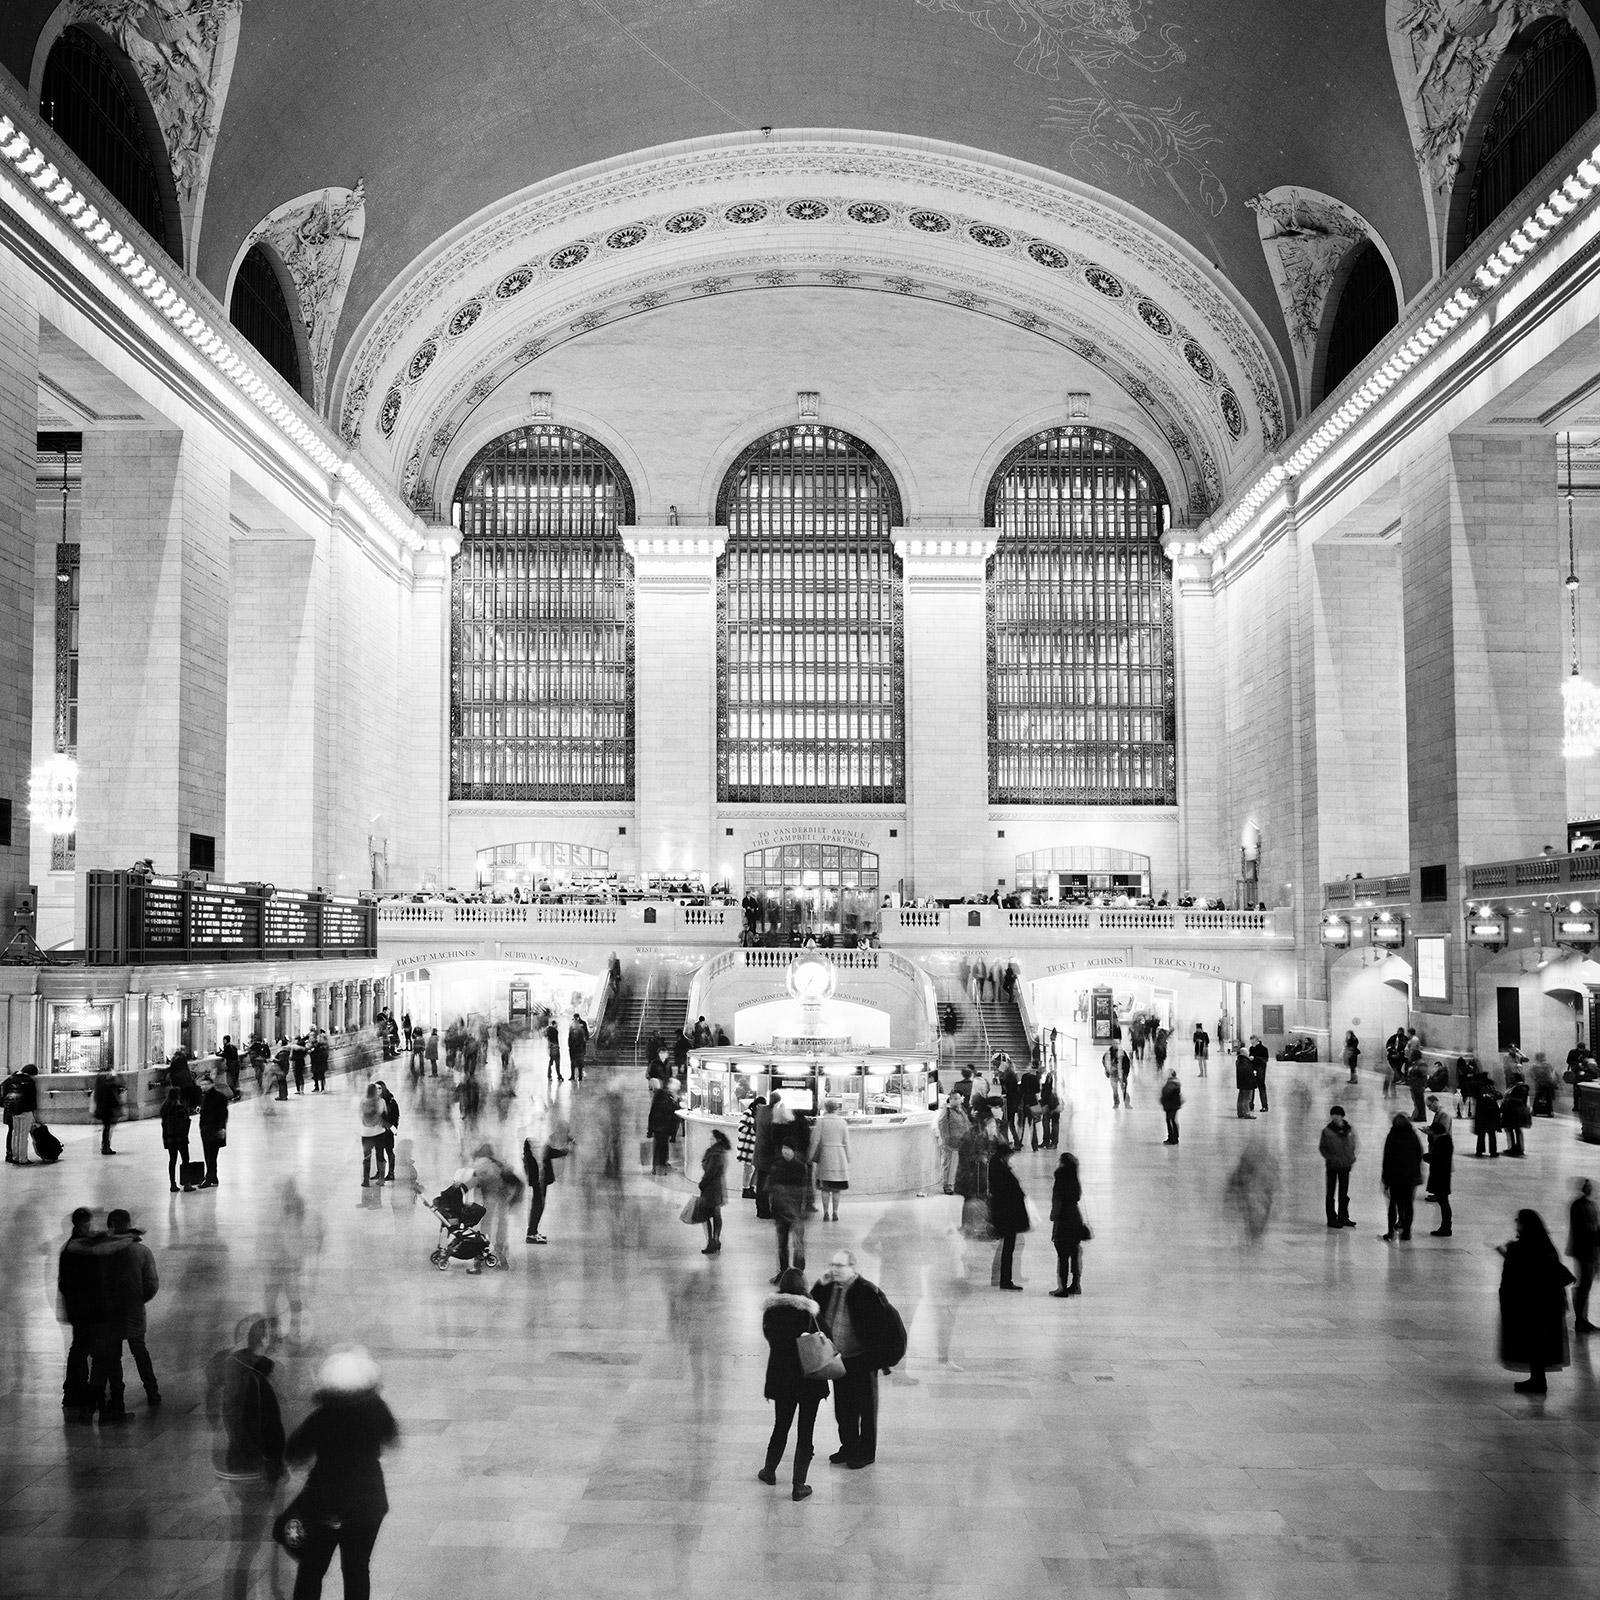 Grand Central Station, New York City, photographie en noir et blanc, paysage urbain